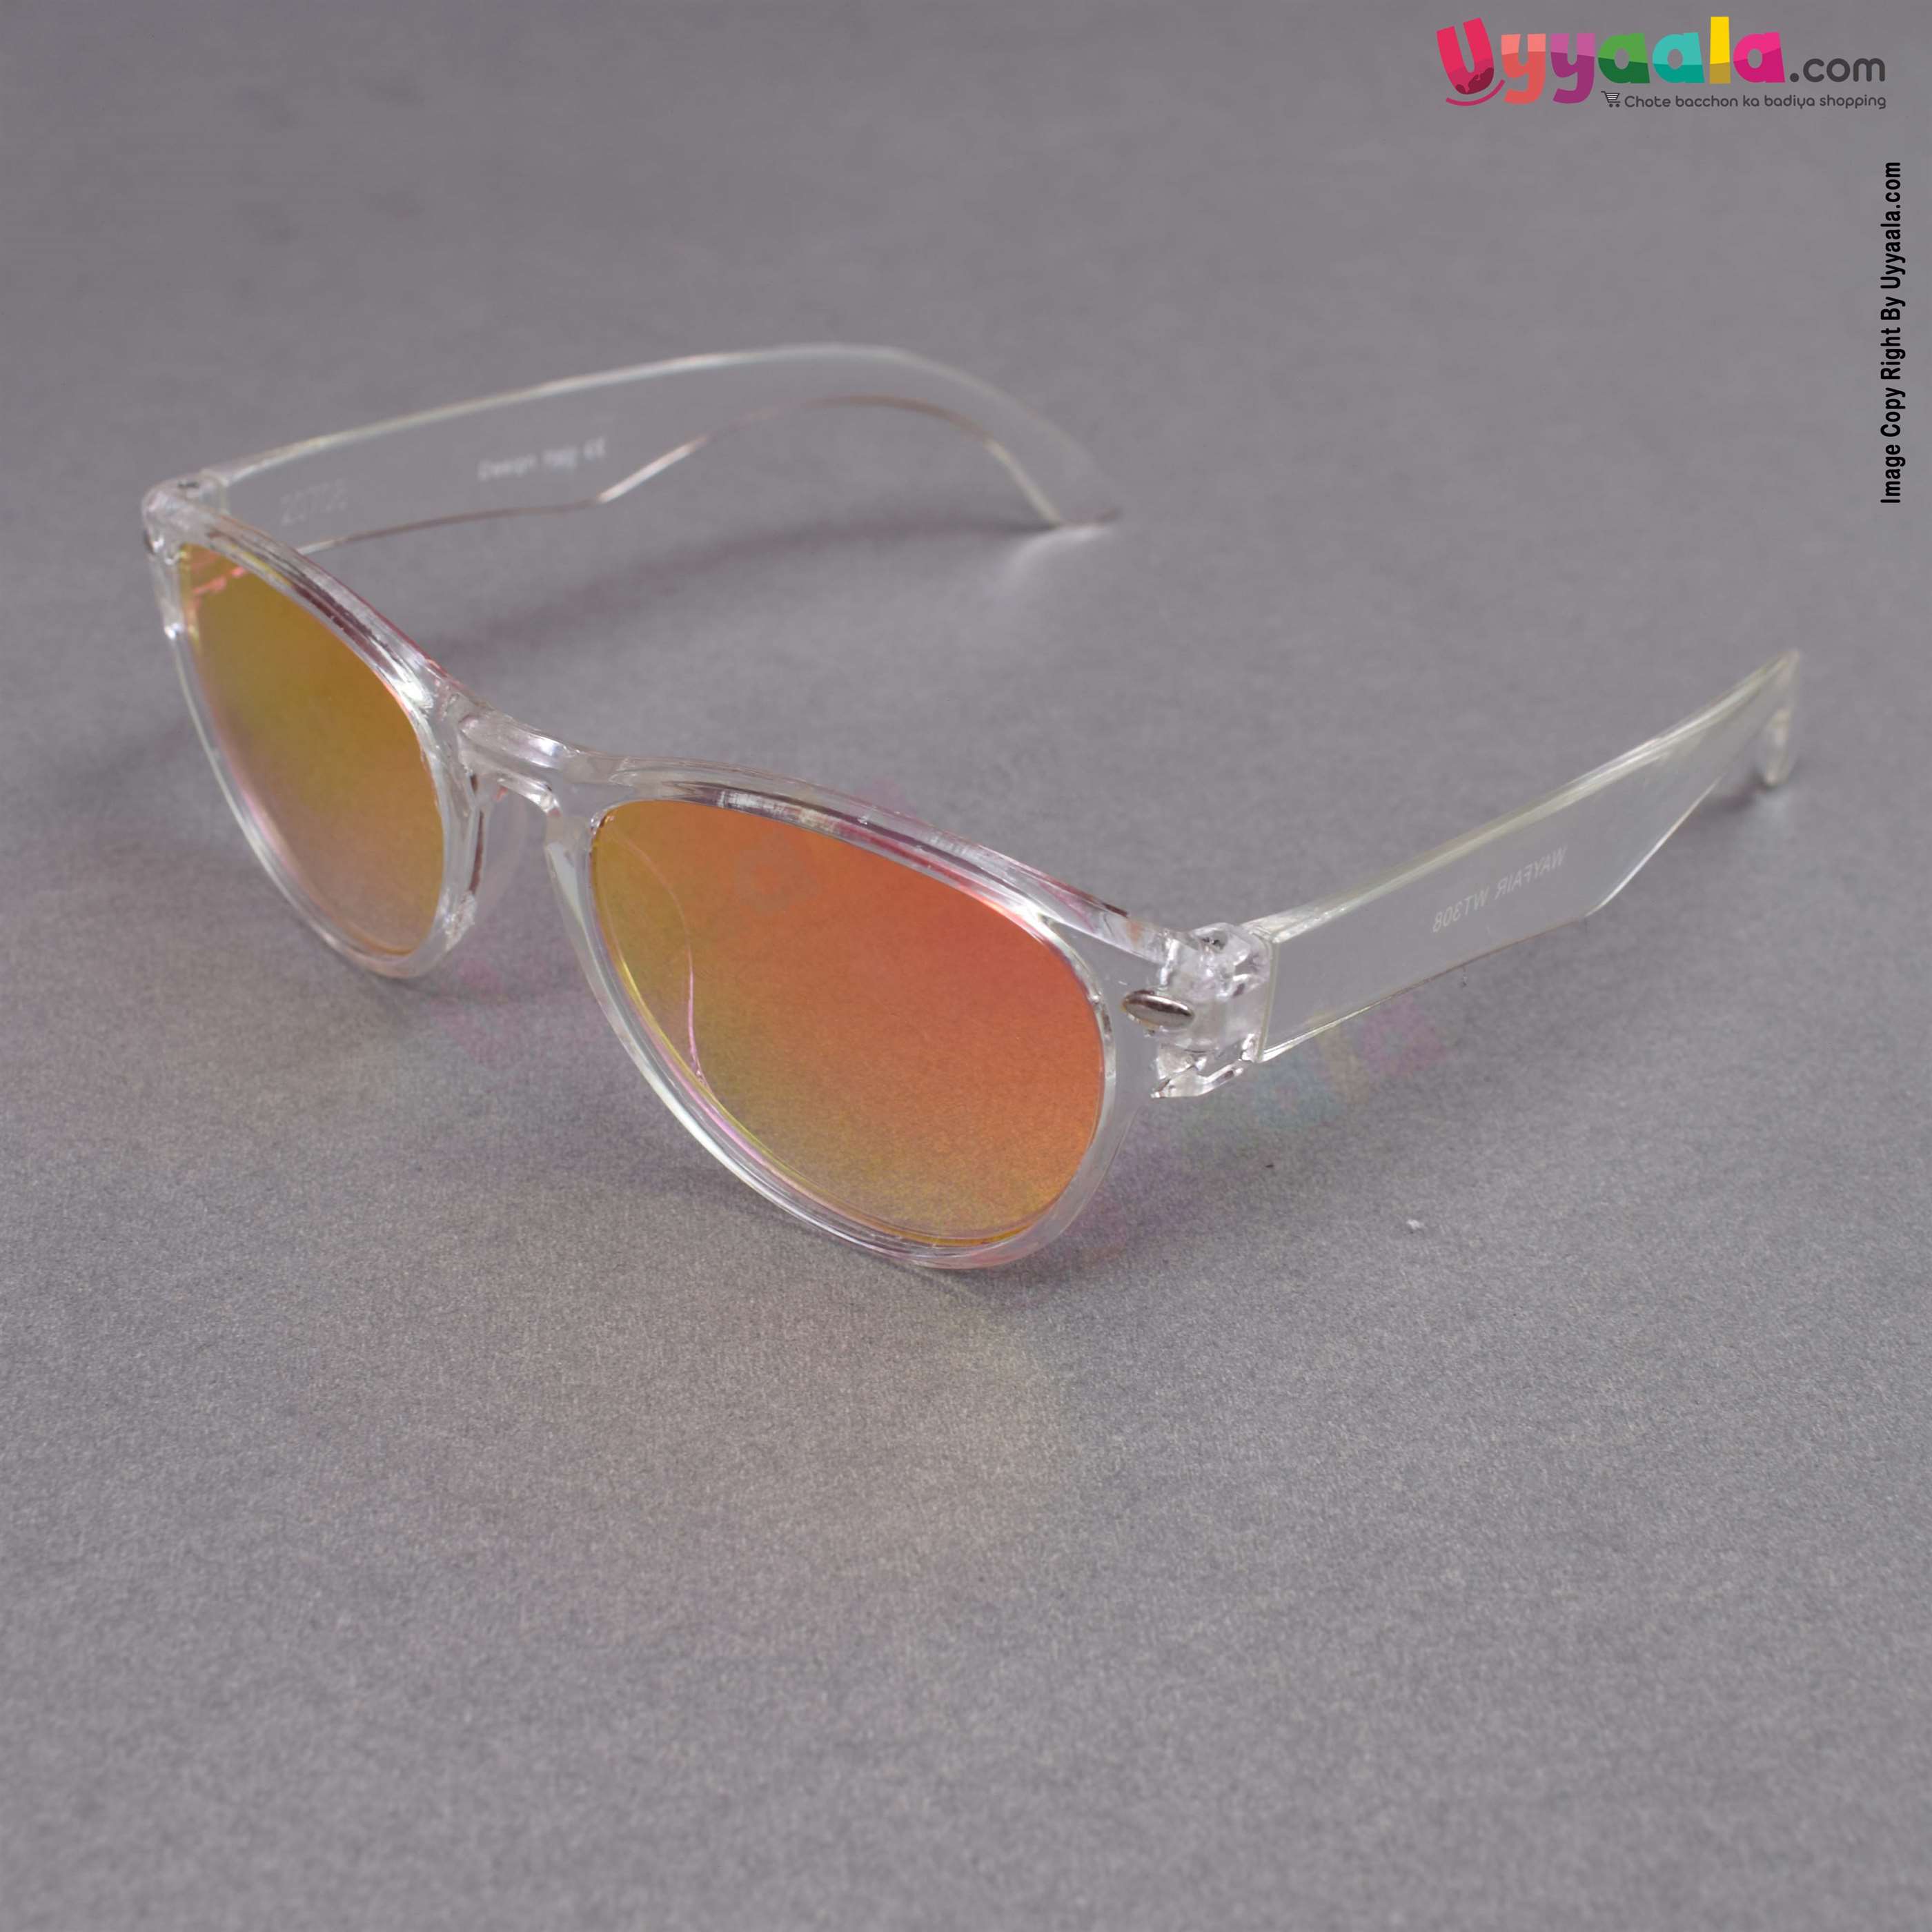 Trendy cat-eye orange shade sunglasses for kids - 1 - 12 years